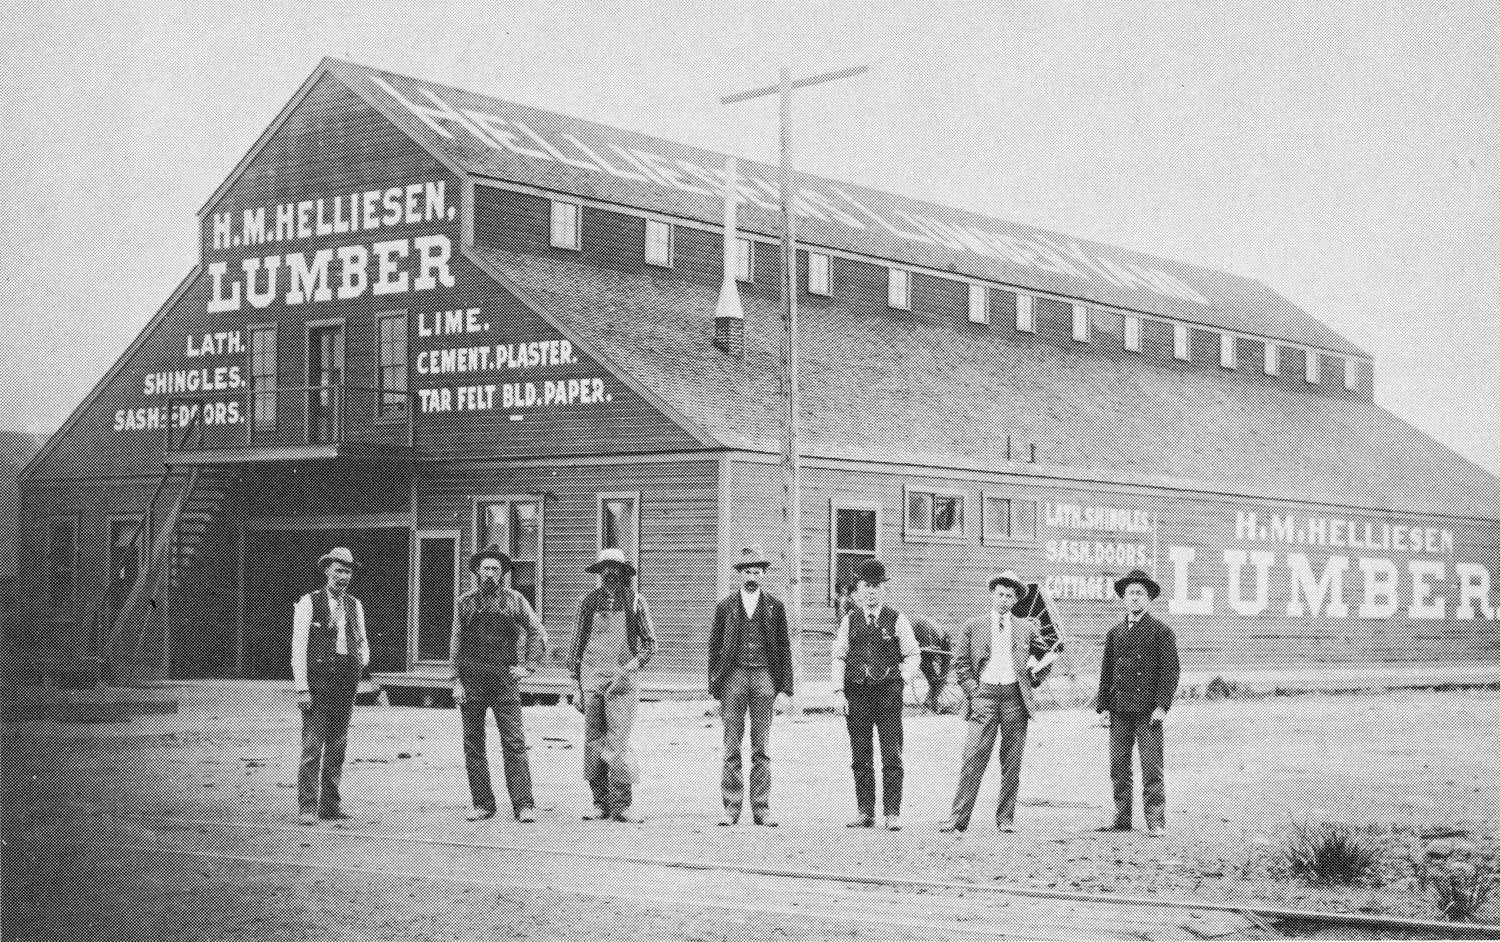 Helliesen Lumber circa 1903